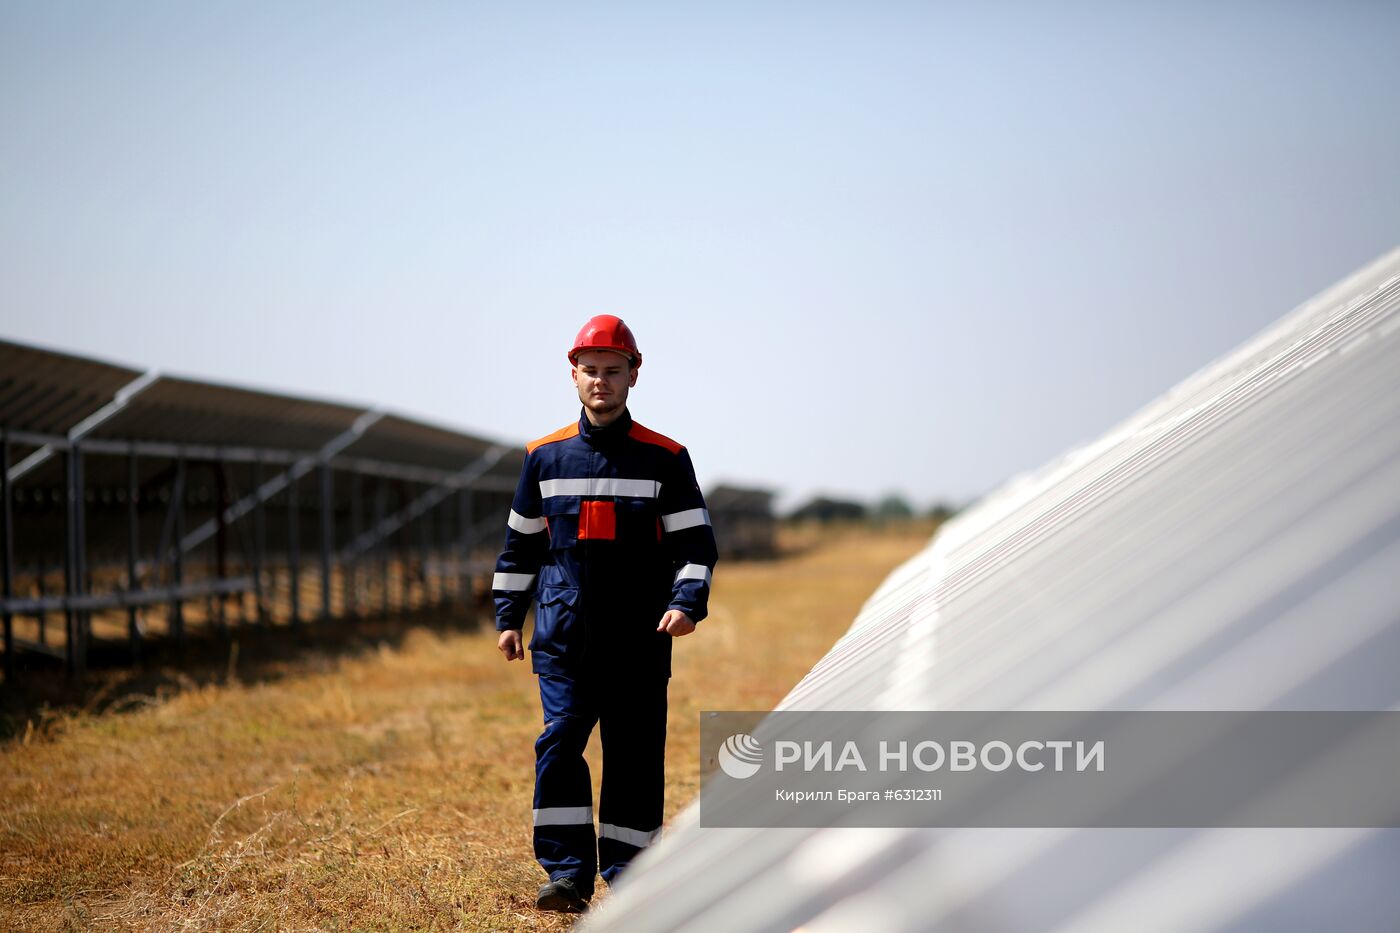 Солнечная электростанция в Волгограде